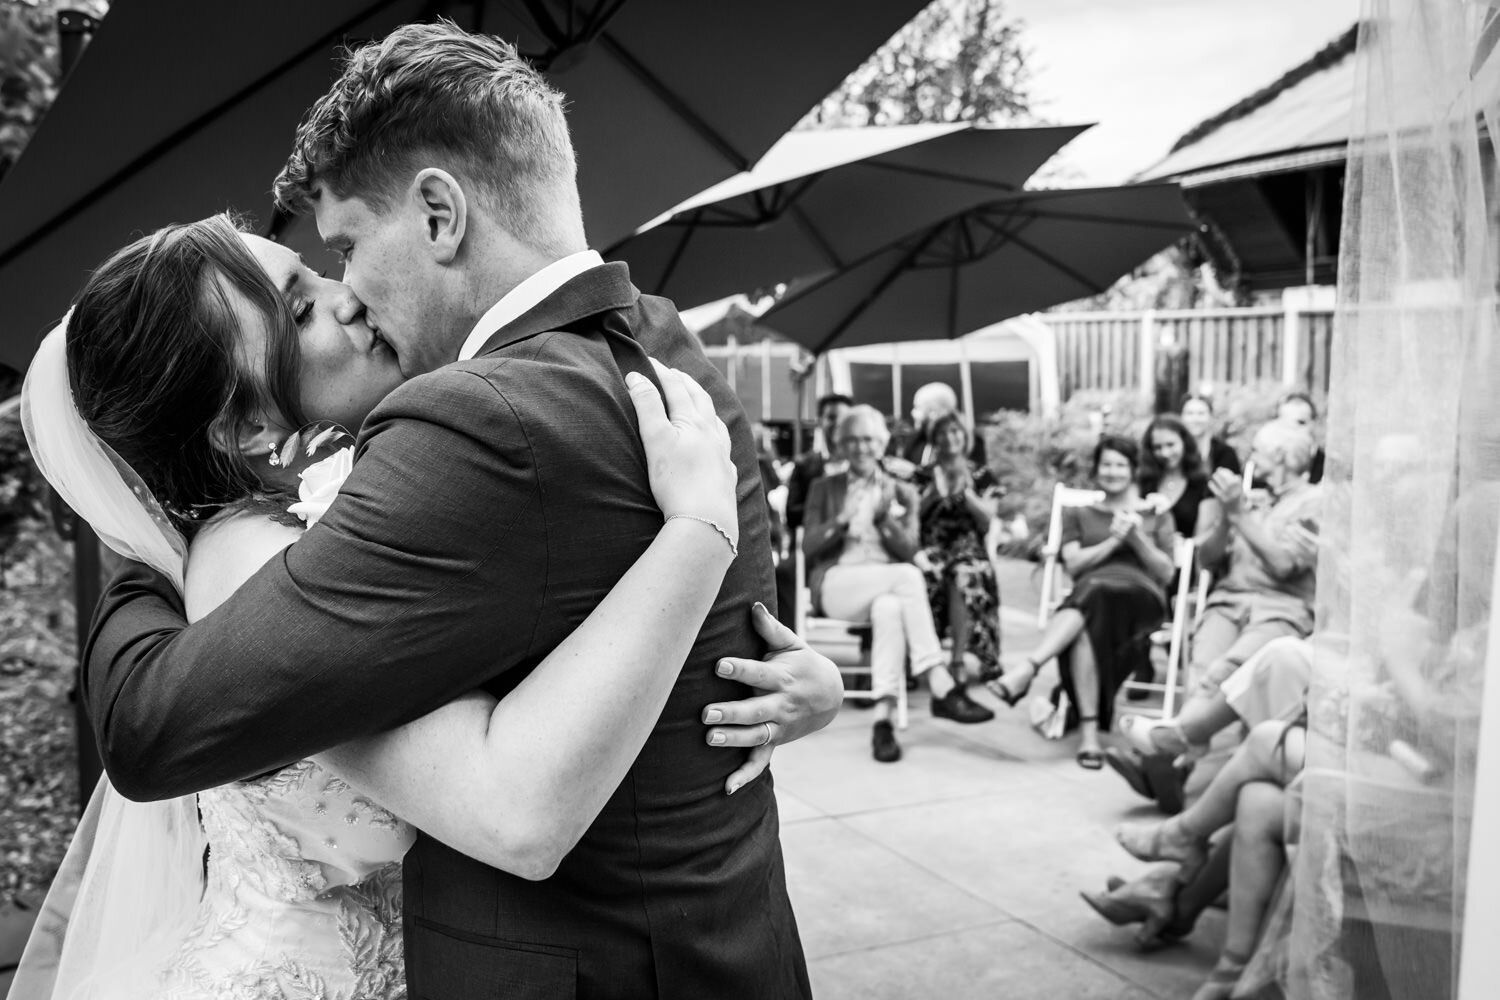 De kus het mooiste moment van de trouwdag, een goede trouwfotograaf legt dit vast, mooi is ook dat de gasten op de achtergrond te zien zijn.